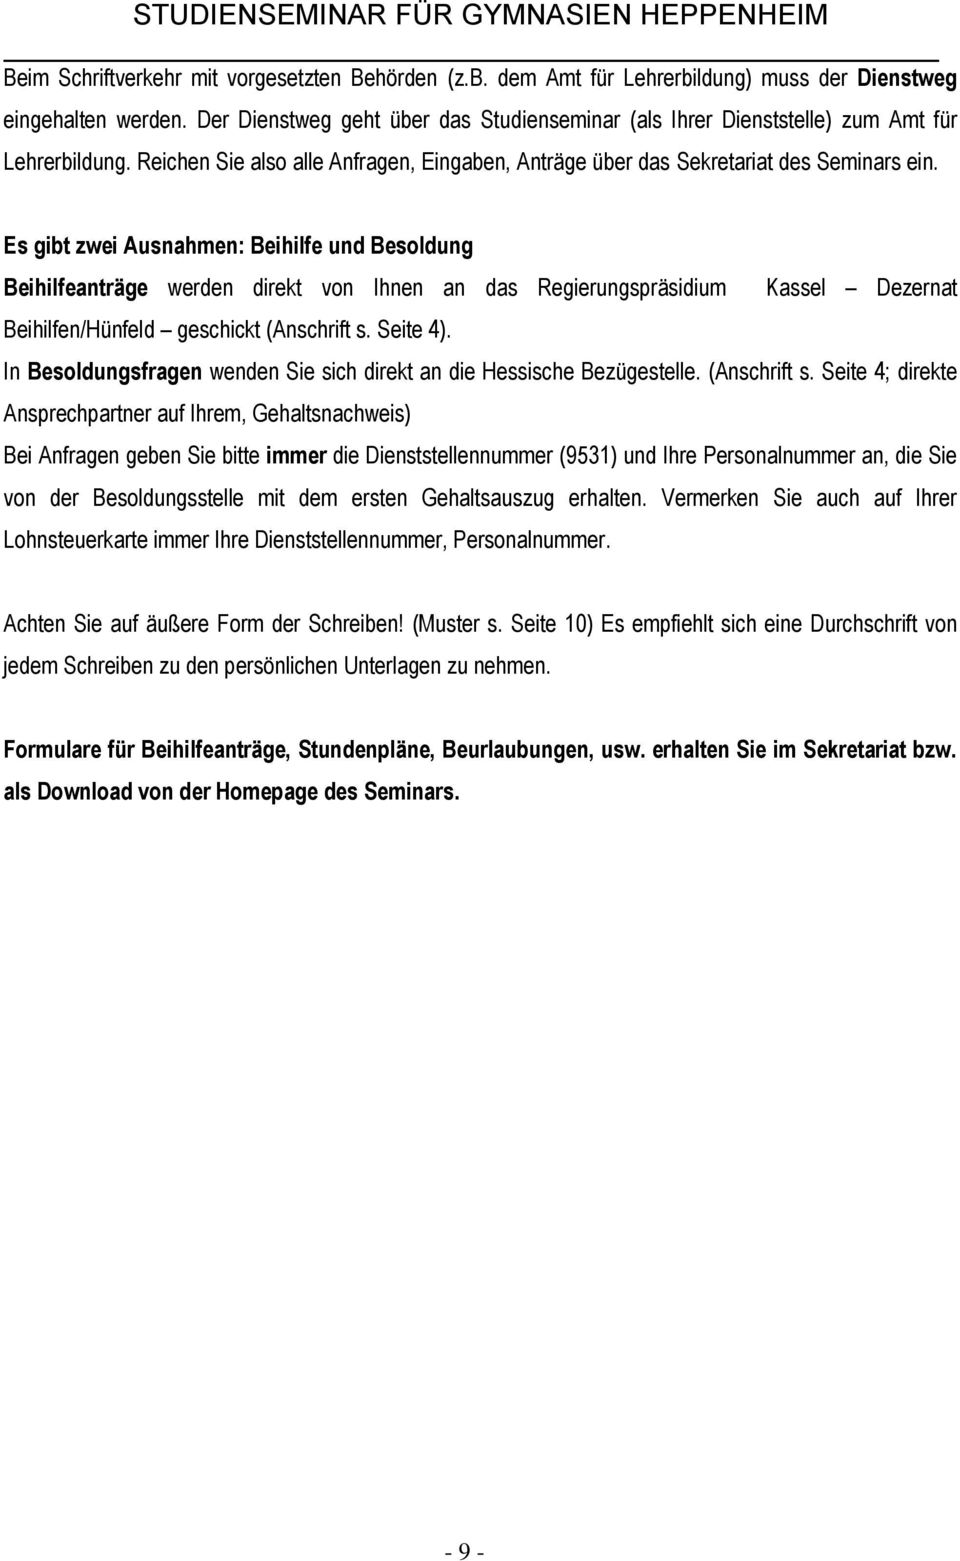 Es gibt zwei Ausnahmen: Beihilfe und Besoldung Beihilfeanträge werden direkt von Ihnen an das Regierungspräsidium Kassel Dezernat Beihilfen/Hünfeld geschickt (Anschrift s. Seite 4).